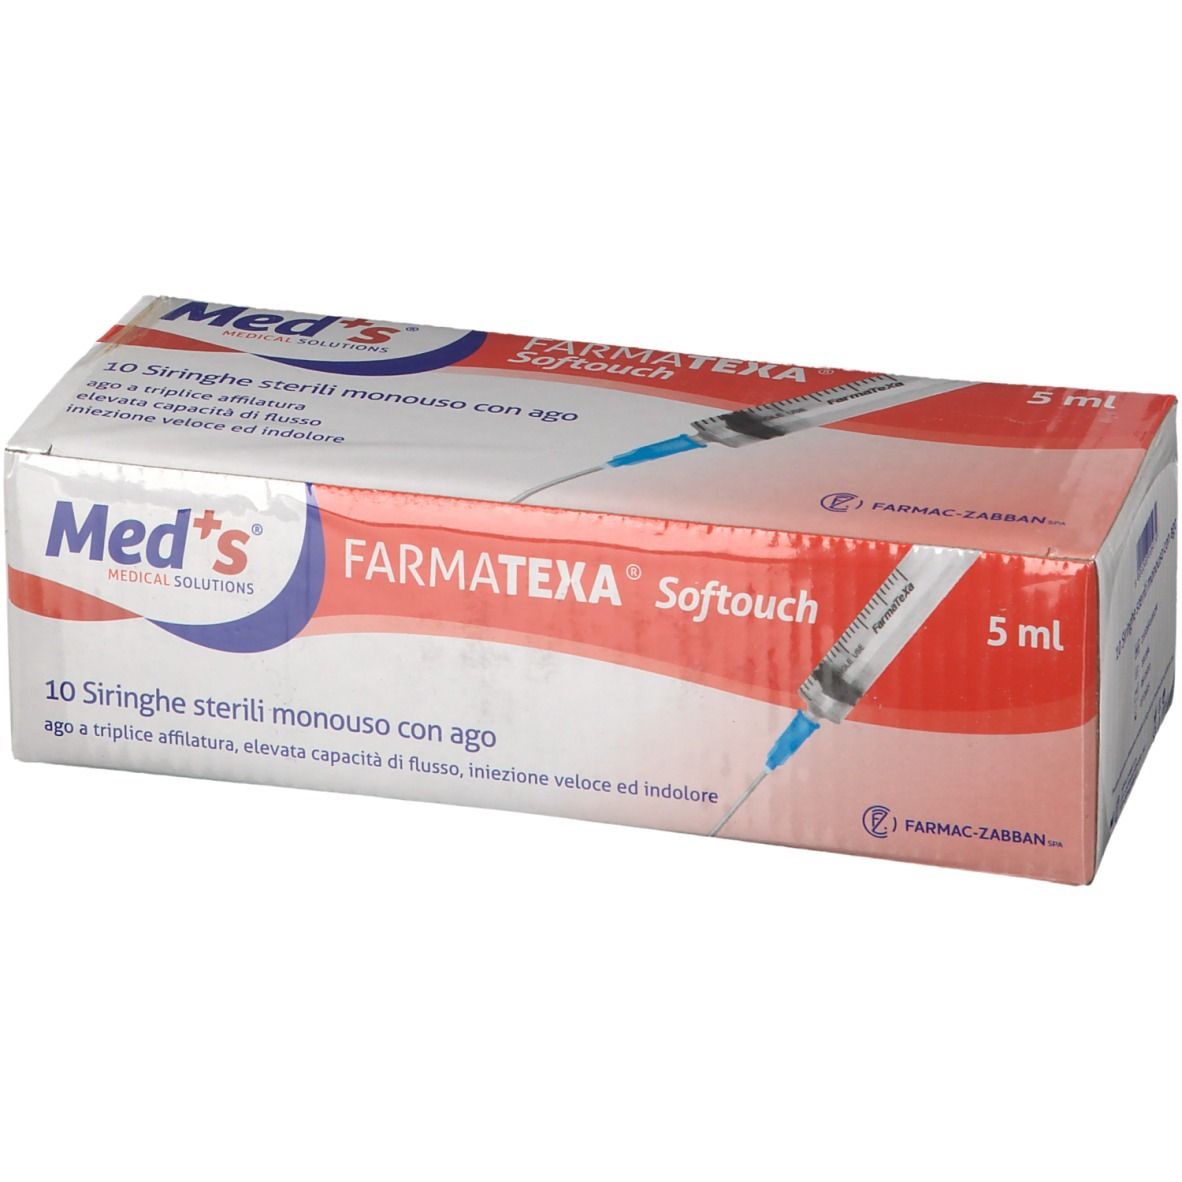 Farmatexa® Softouch Siringhe 5 ml